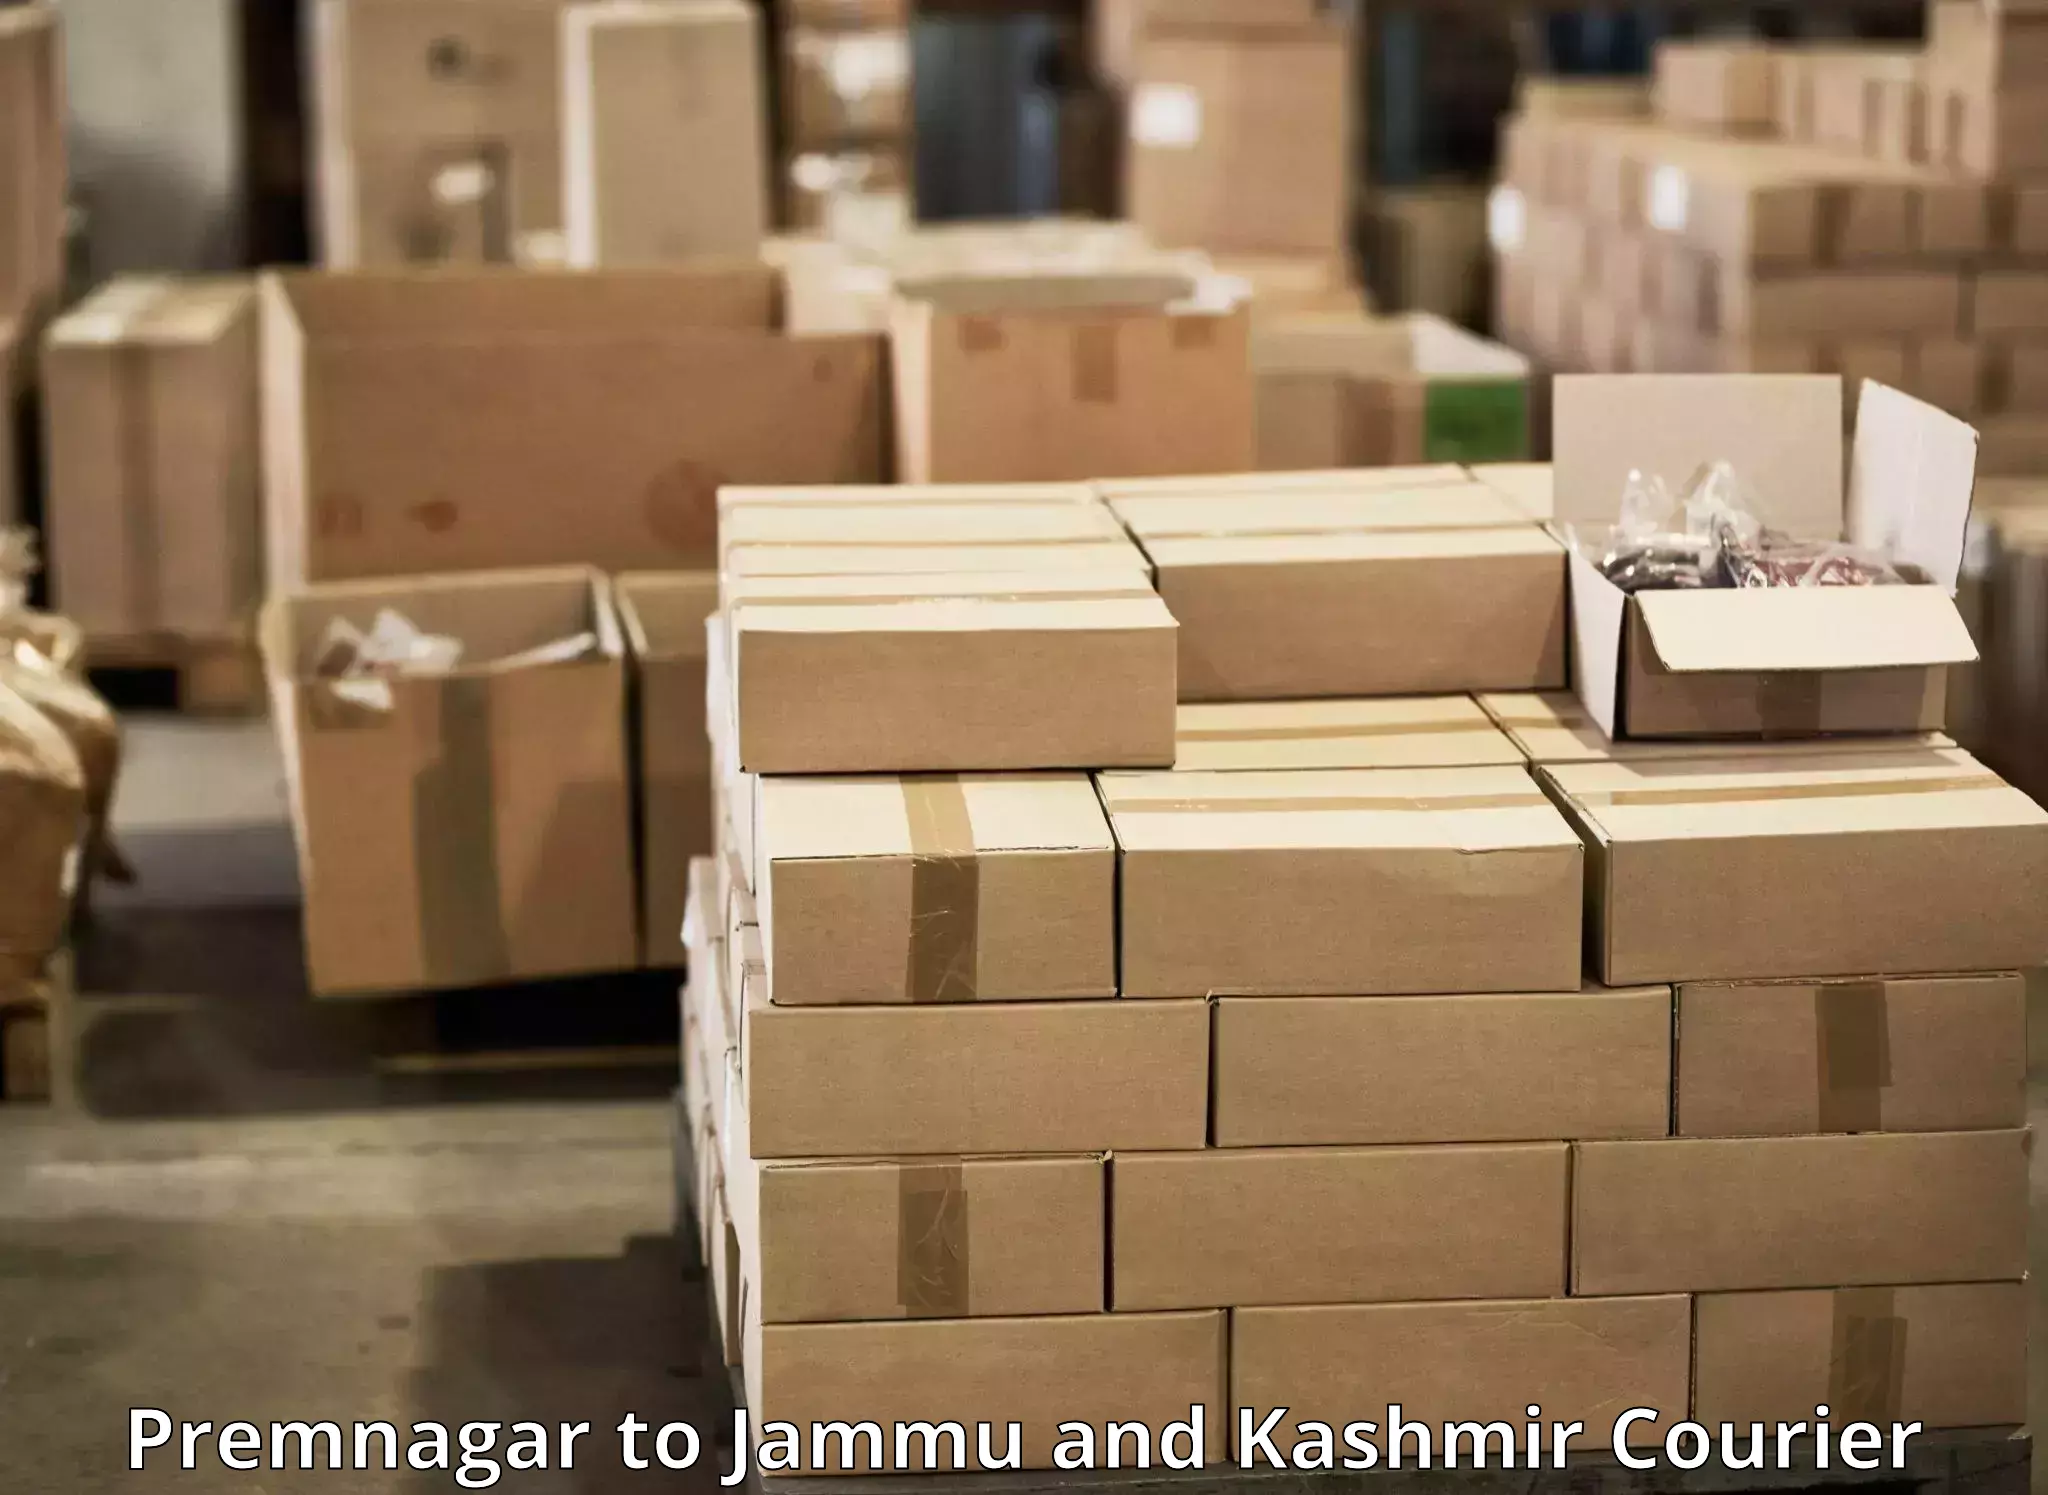 Fast delivery service in Premnagar to Rajouri